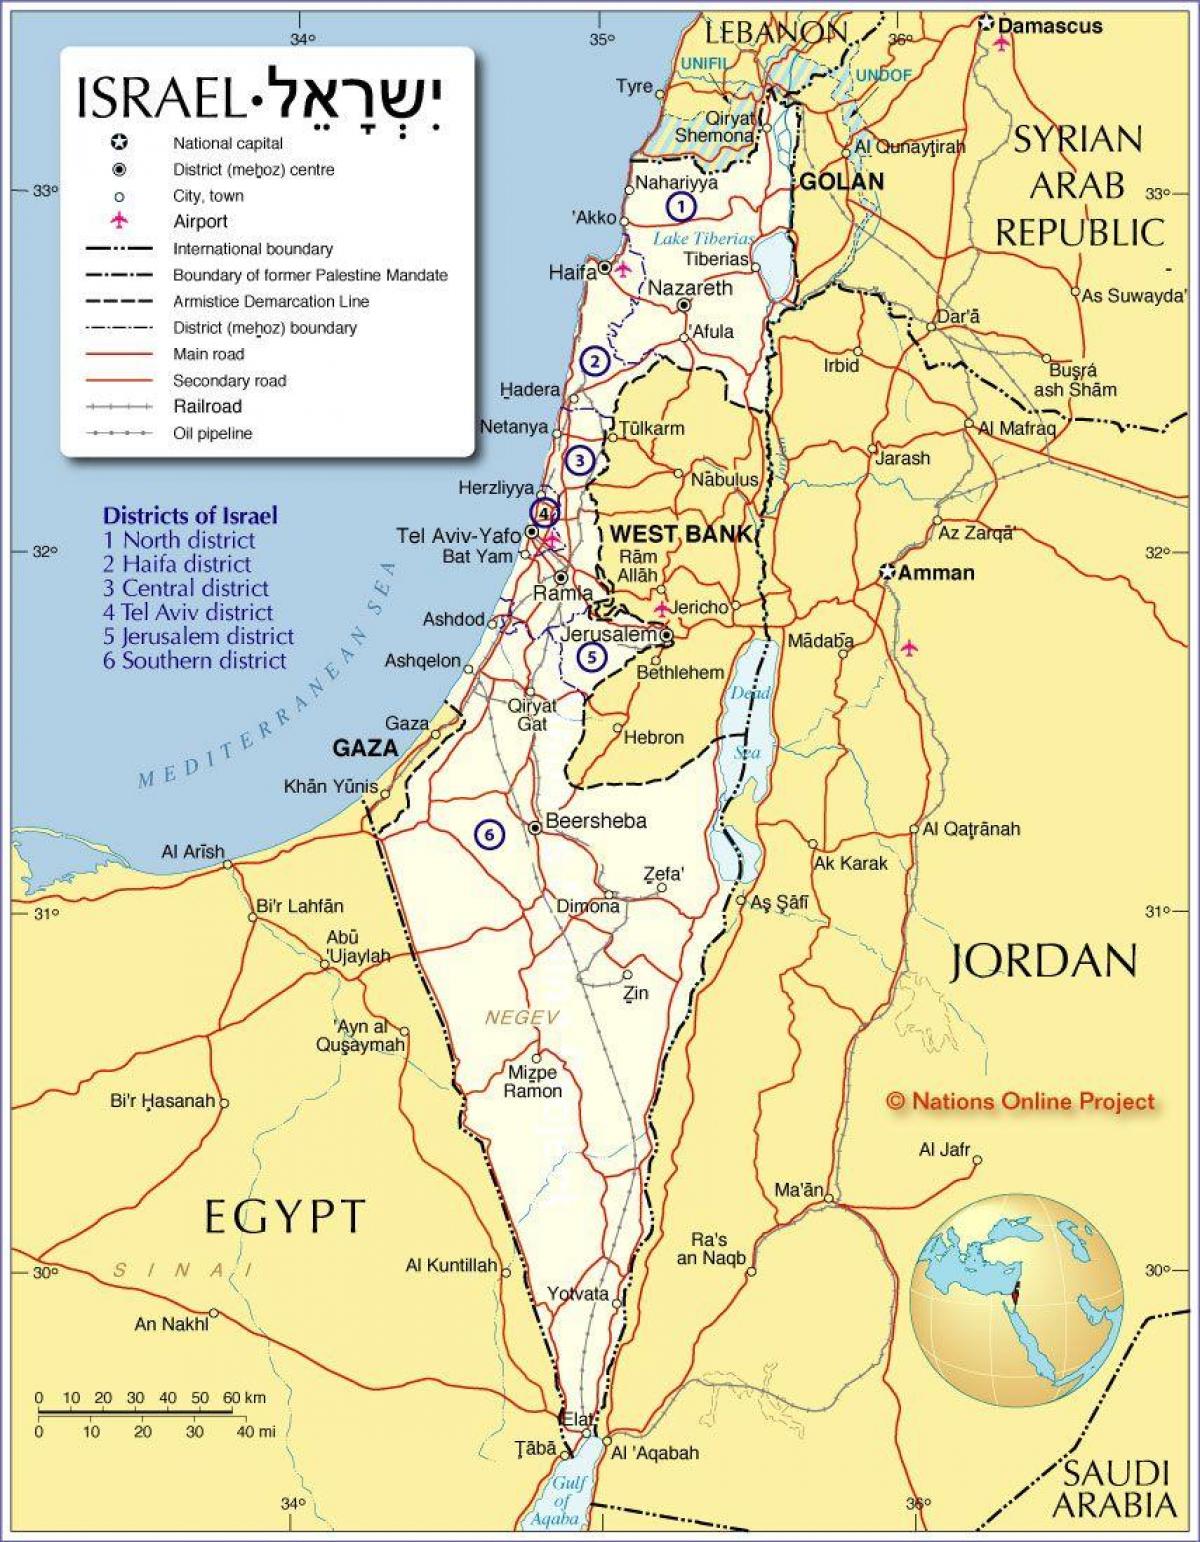 ისრაელის რეგიონების რუკა